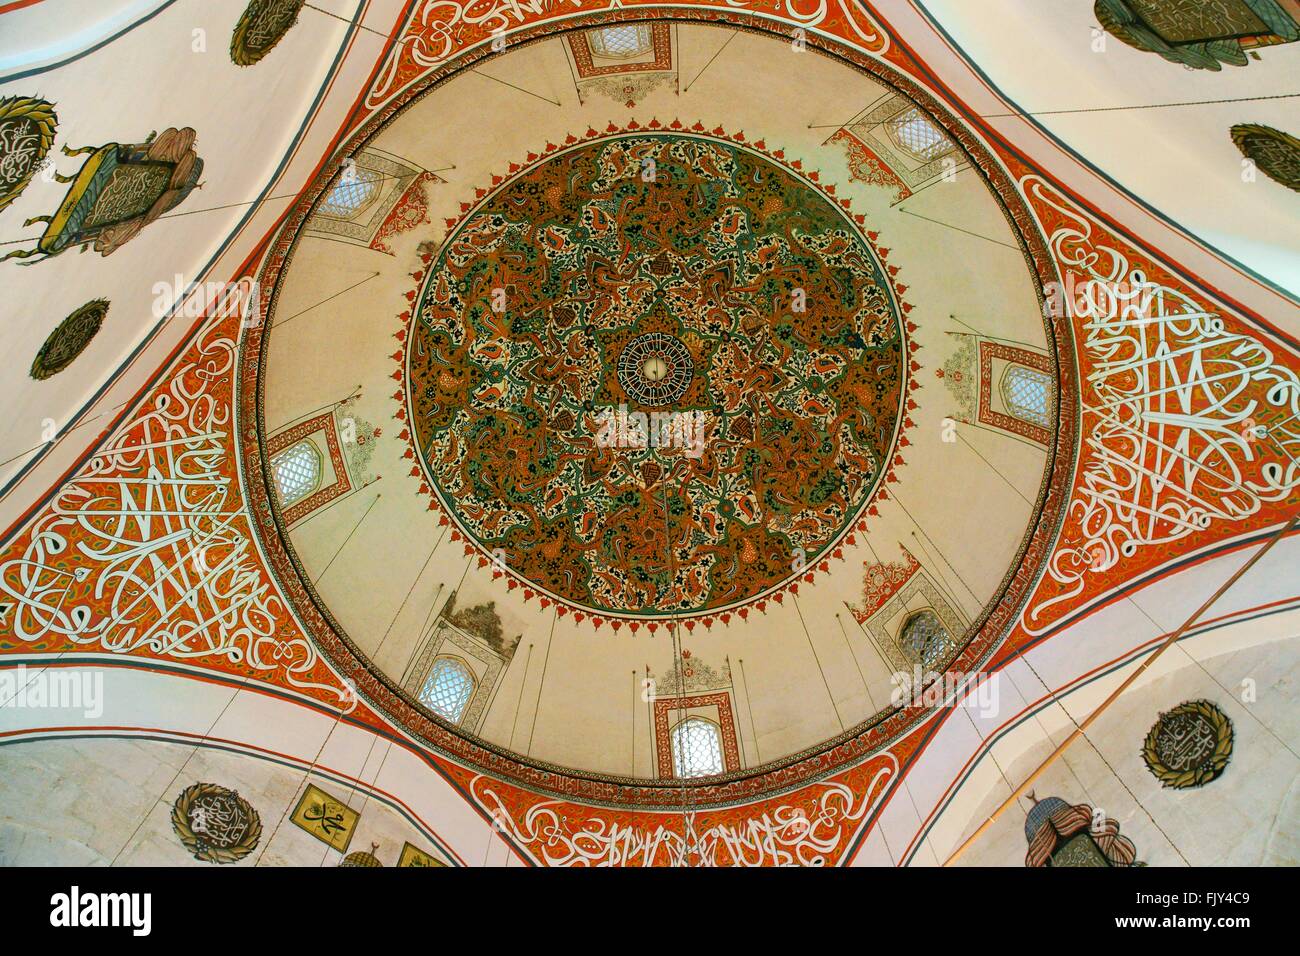 Museo di mevlana, città di Konya, Turchia. cercando fino all'interno della cupola della moschea Foto Stock